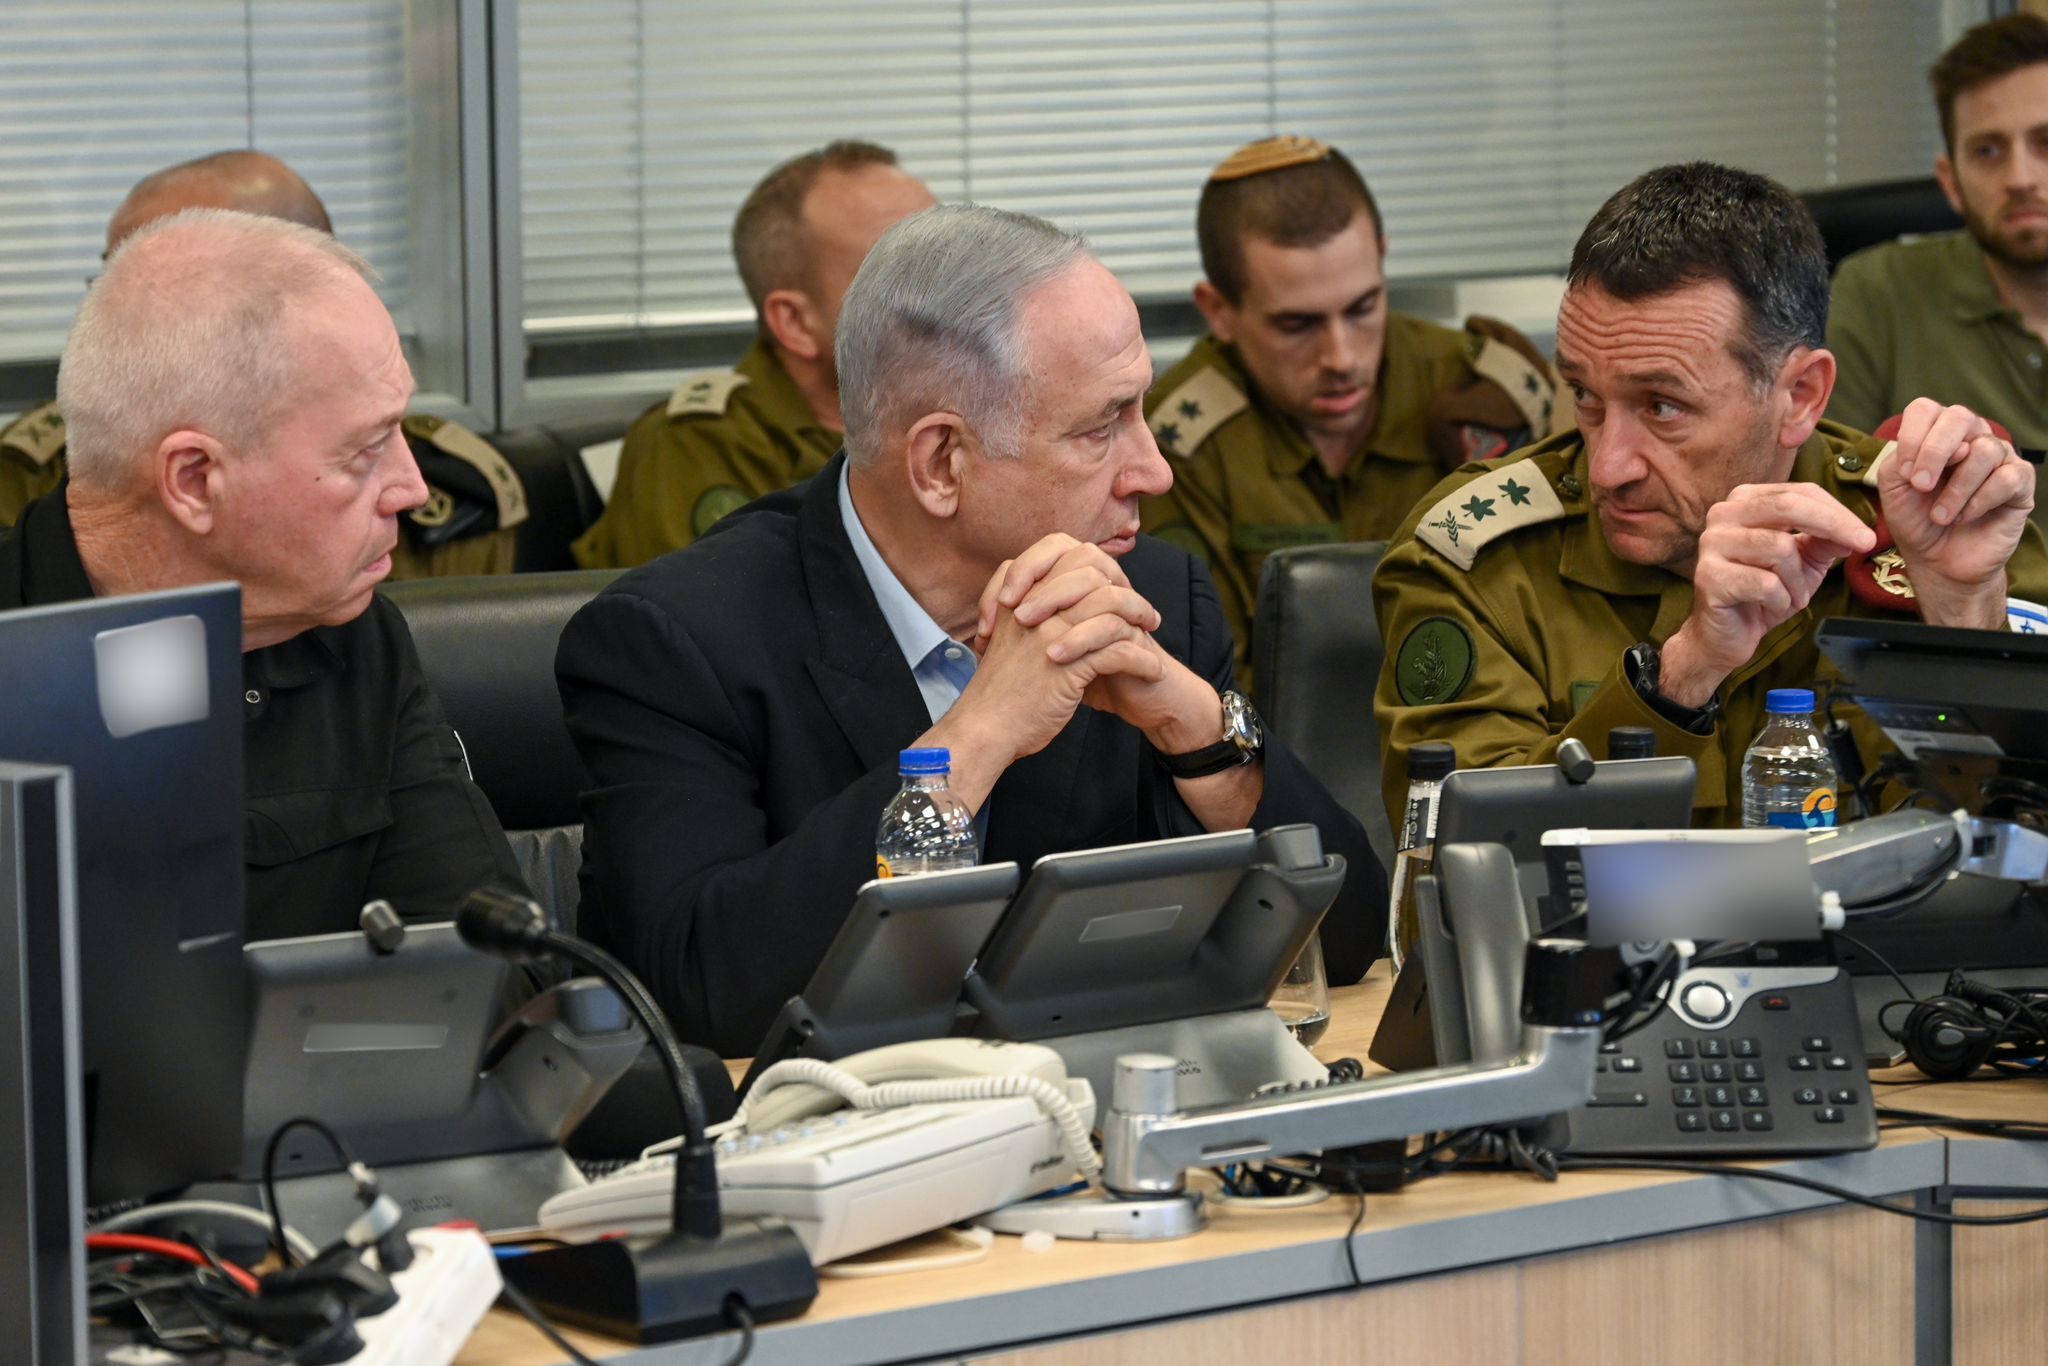 Ministri i Jashtëm izraelit: Irani na informoi, ata kanë vendosur të sulmojnë Izraelin